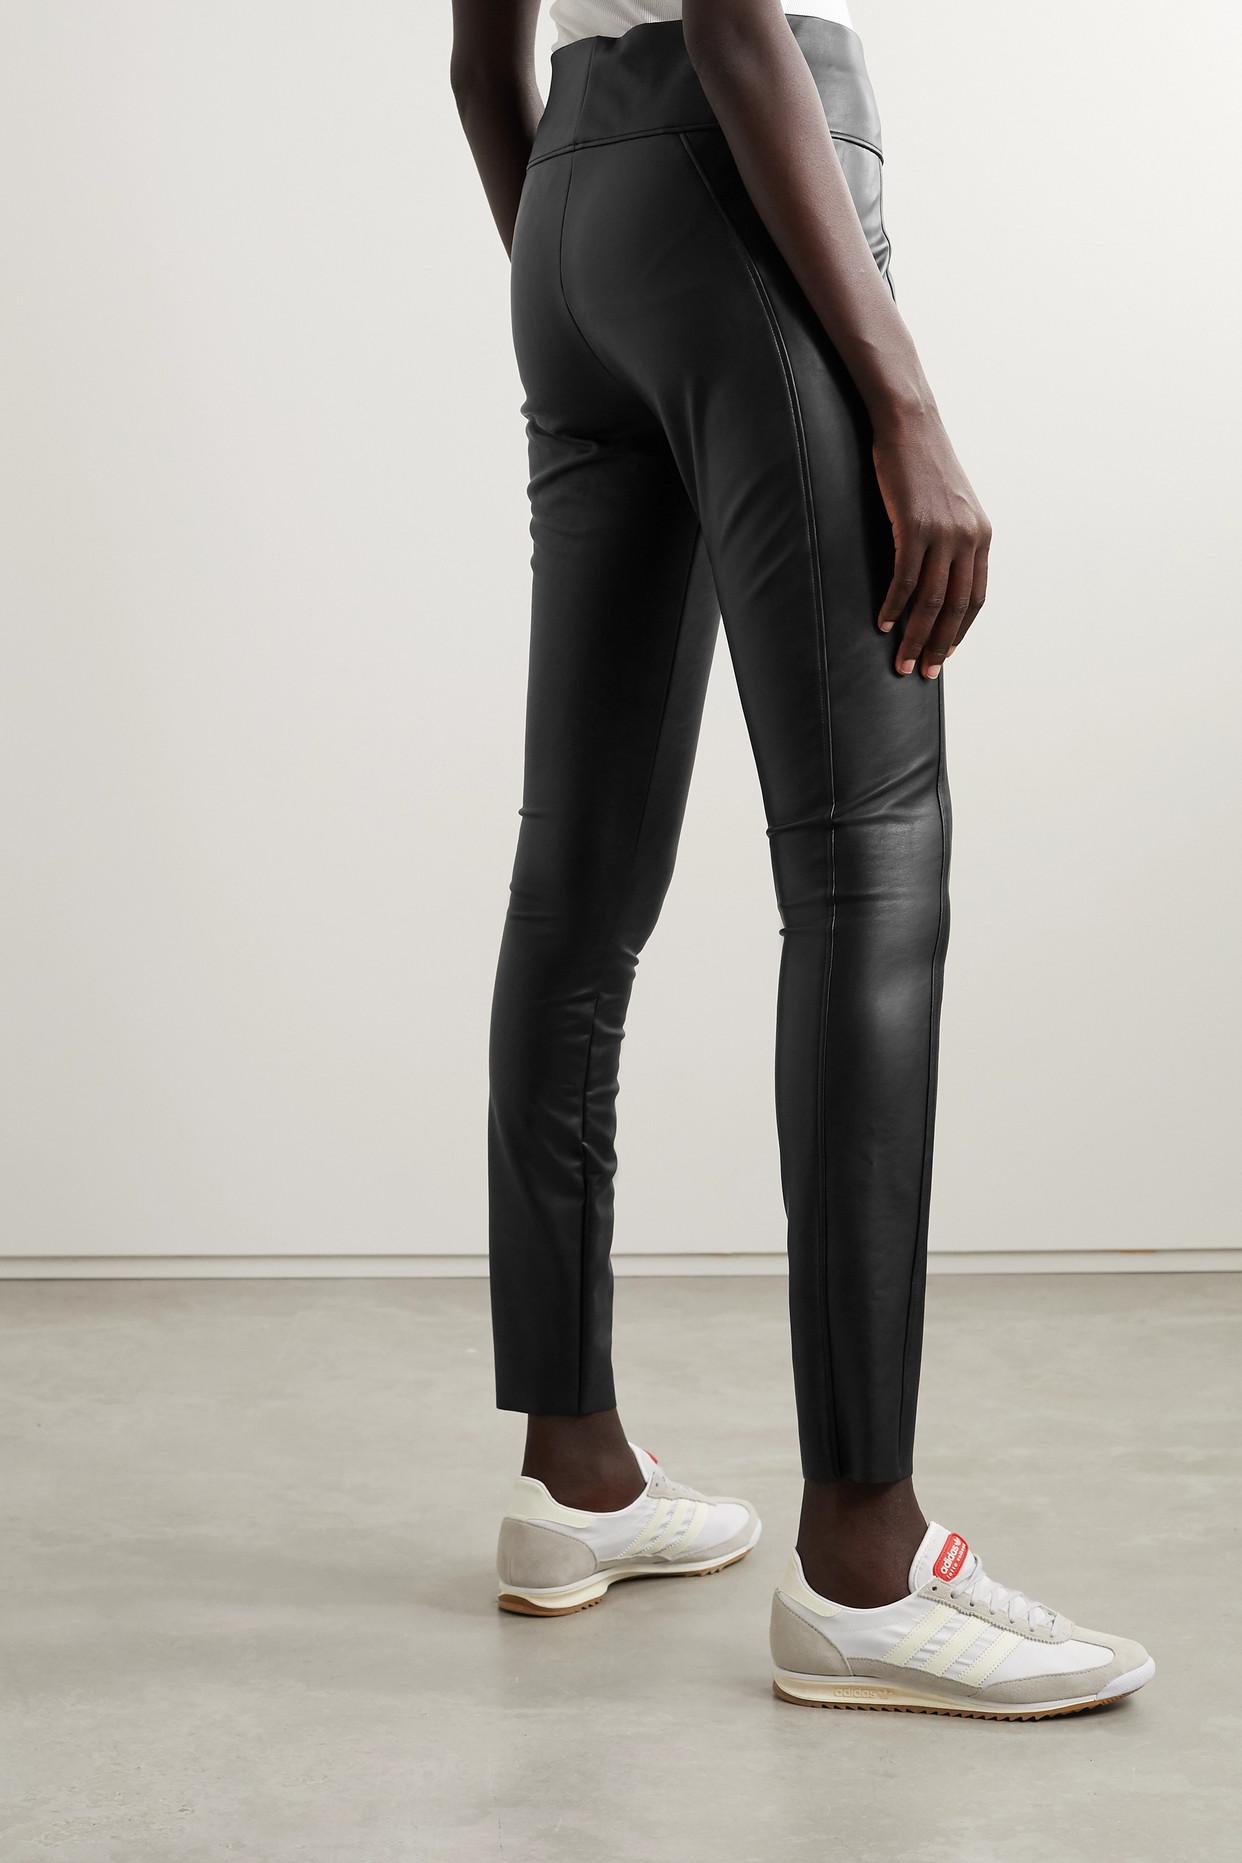 Edie faux leather leggings in black - Wolford